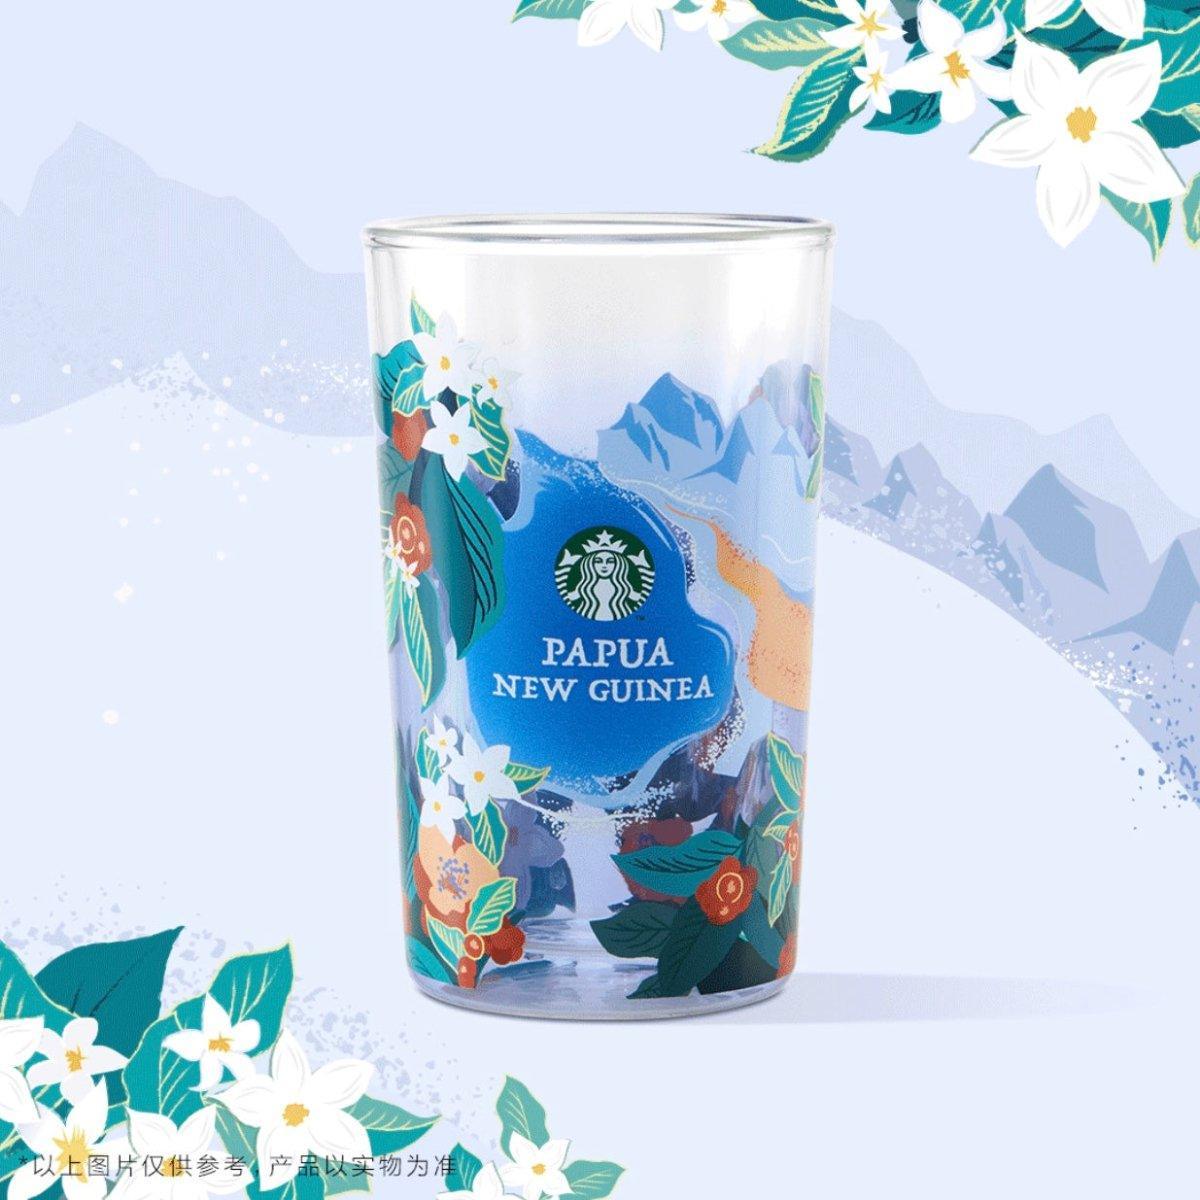 Starbucks 350ml/12oz New Guinea (Papua) Doubled-Wall Glass Cup - Ann Ann Starbucks